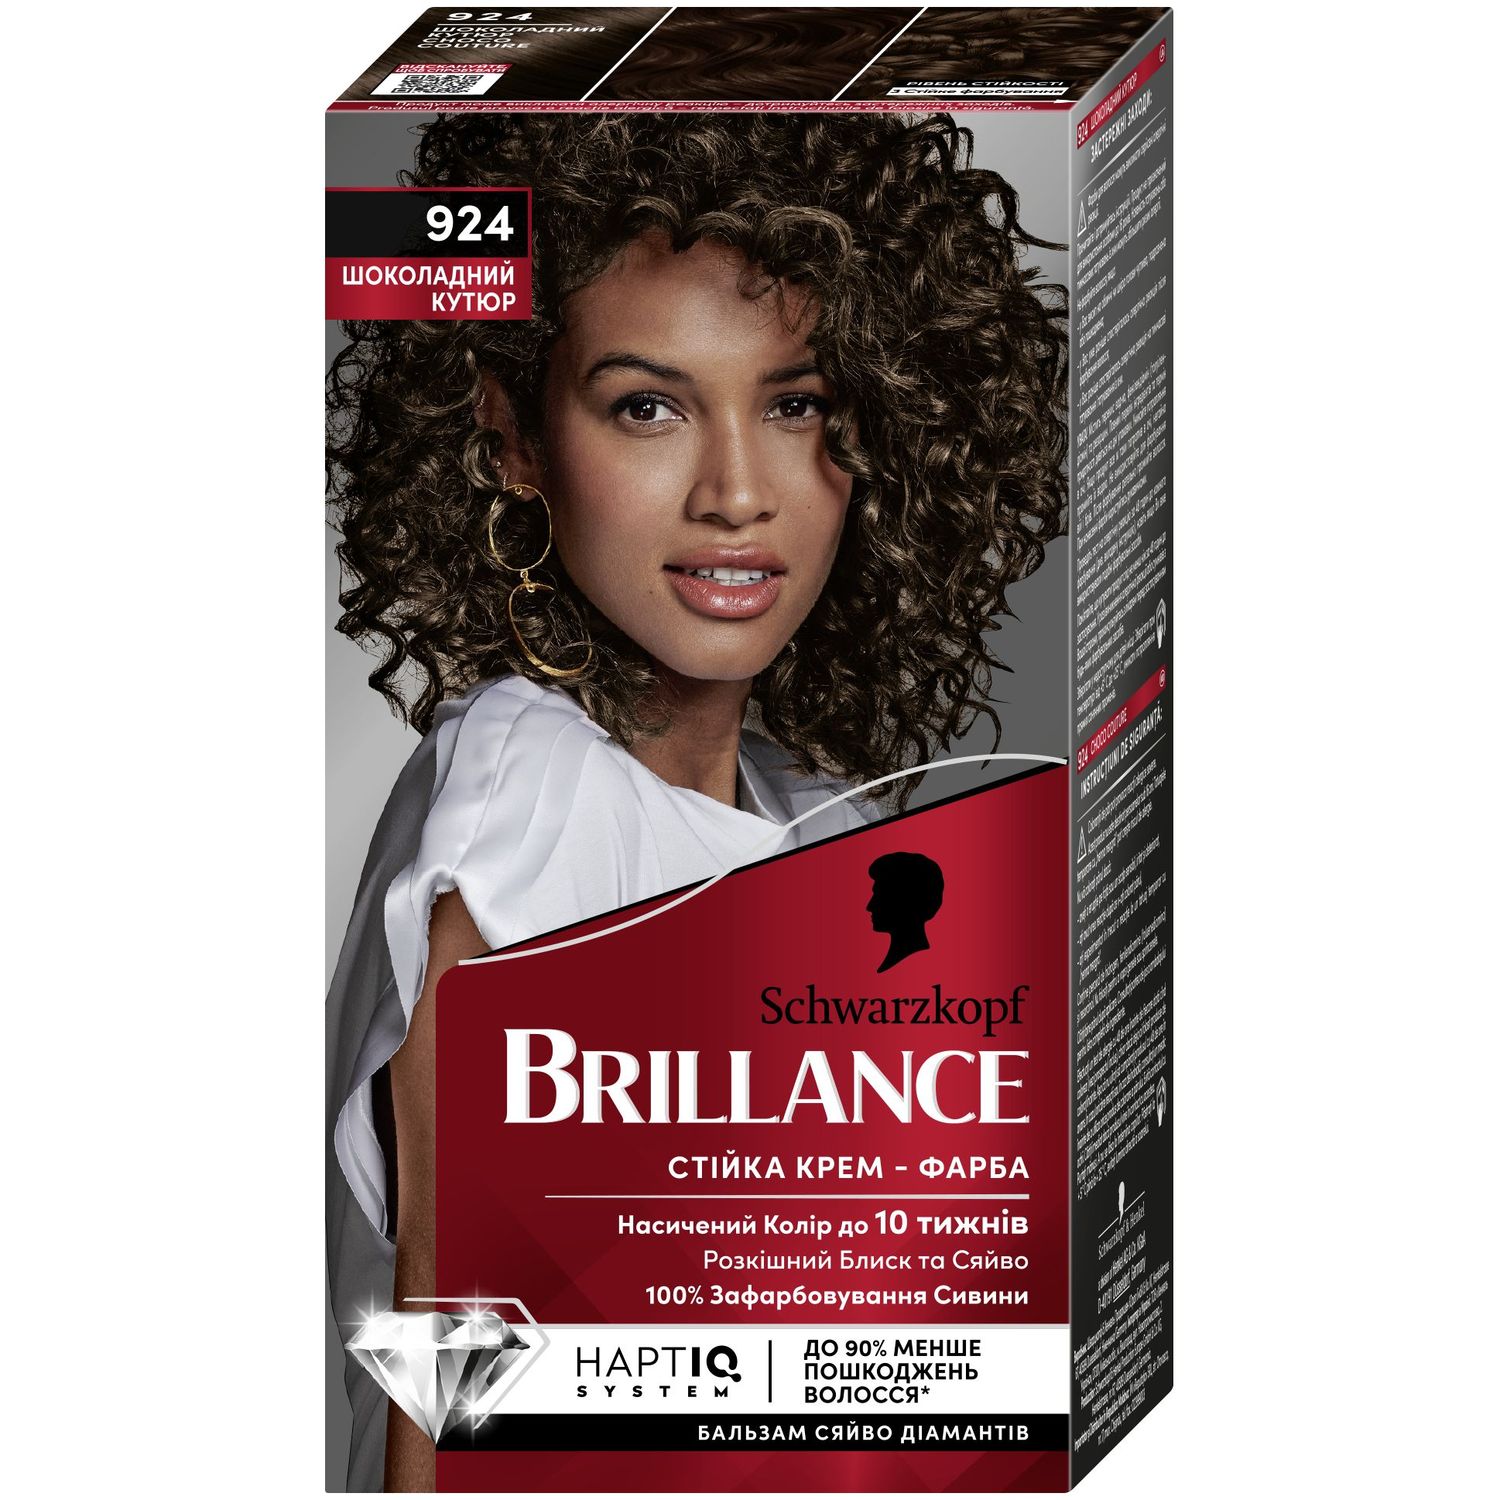 Фарба для волосся Brillance, відтінок 924 Шоколадний кутюр, 142,5 мл - фото 1